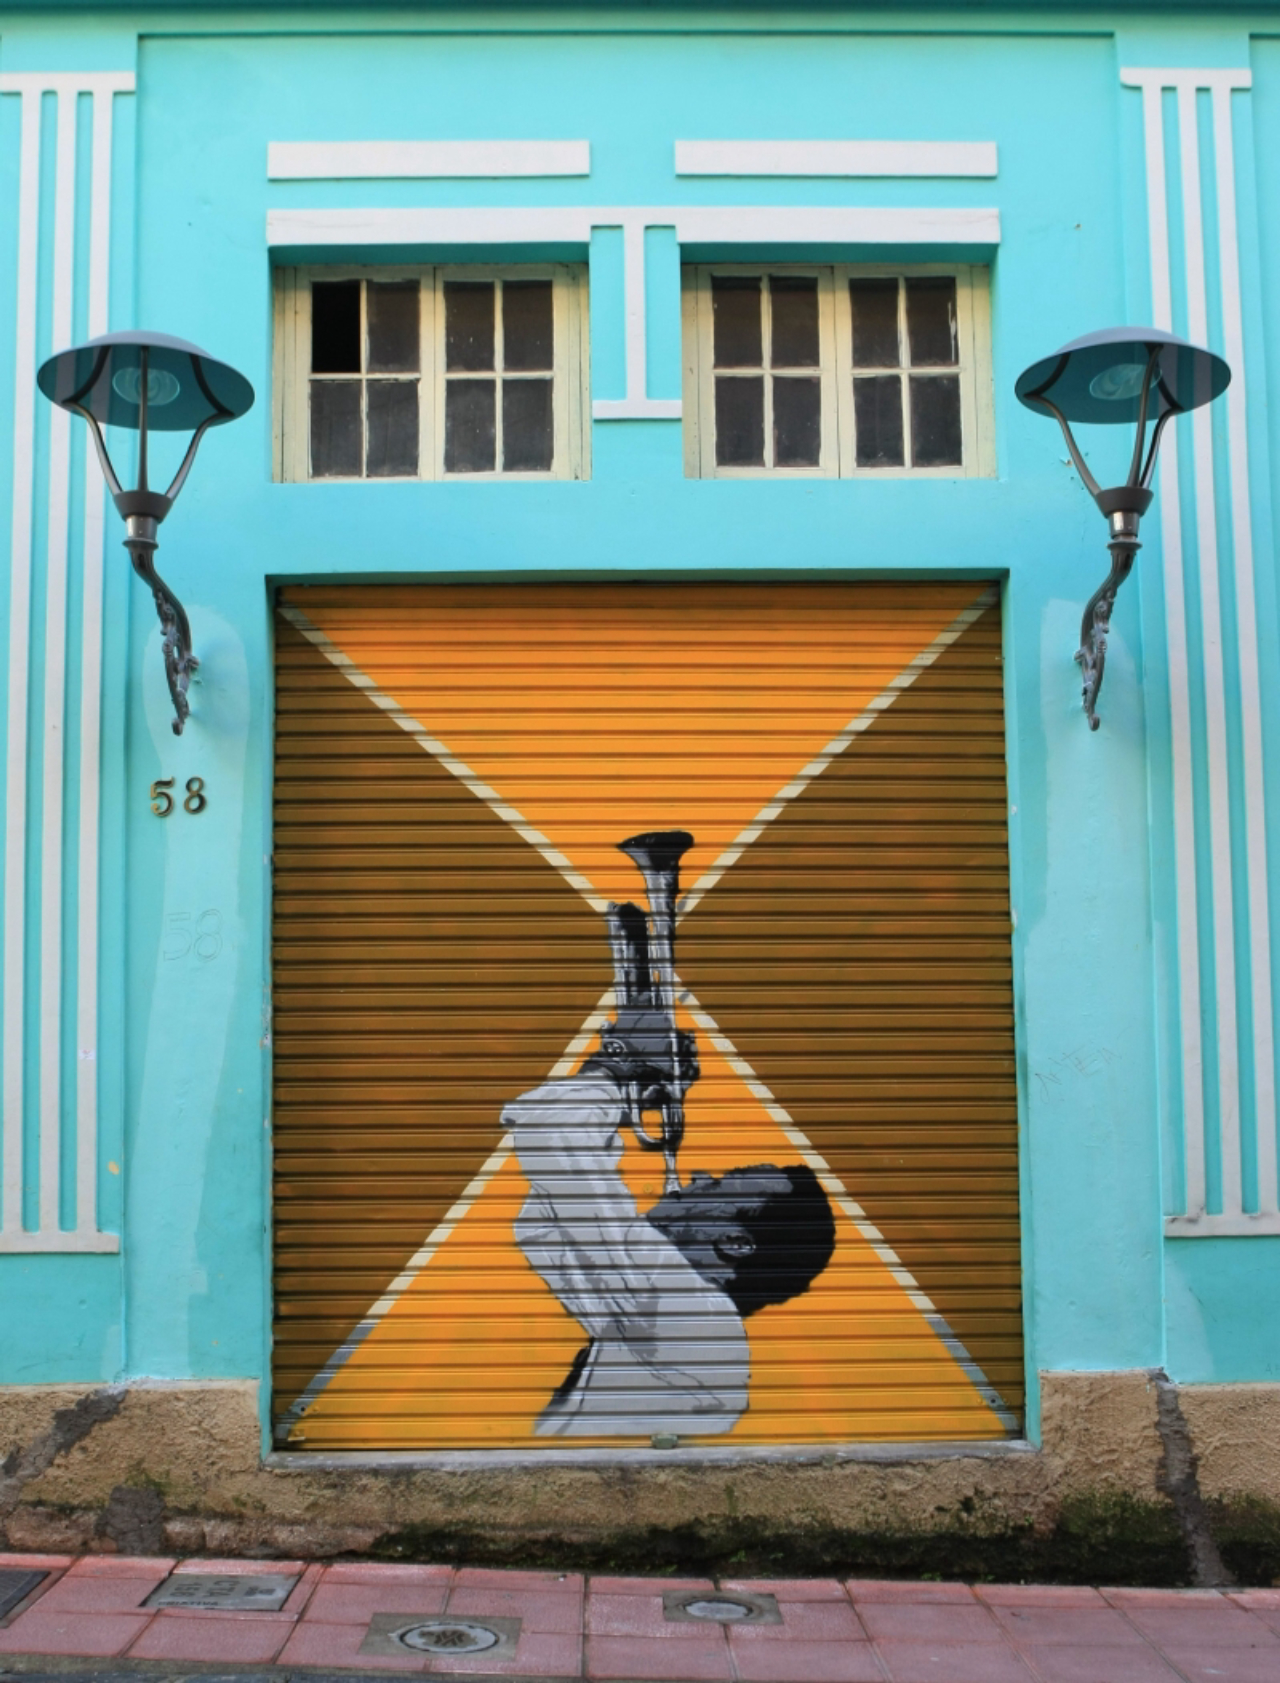 GRAFITE - CURITIBA, 28/06/13 - PARANA - Grafitagem feita nas portas dos comercios da Rua Sao Francisco, no centro da cidade.  Foto: Aniele Nascimento / Agencia de Noticias Gazeta do Povo